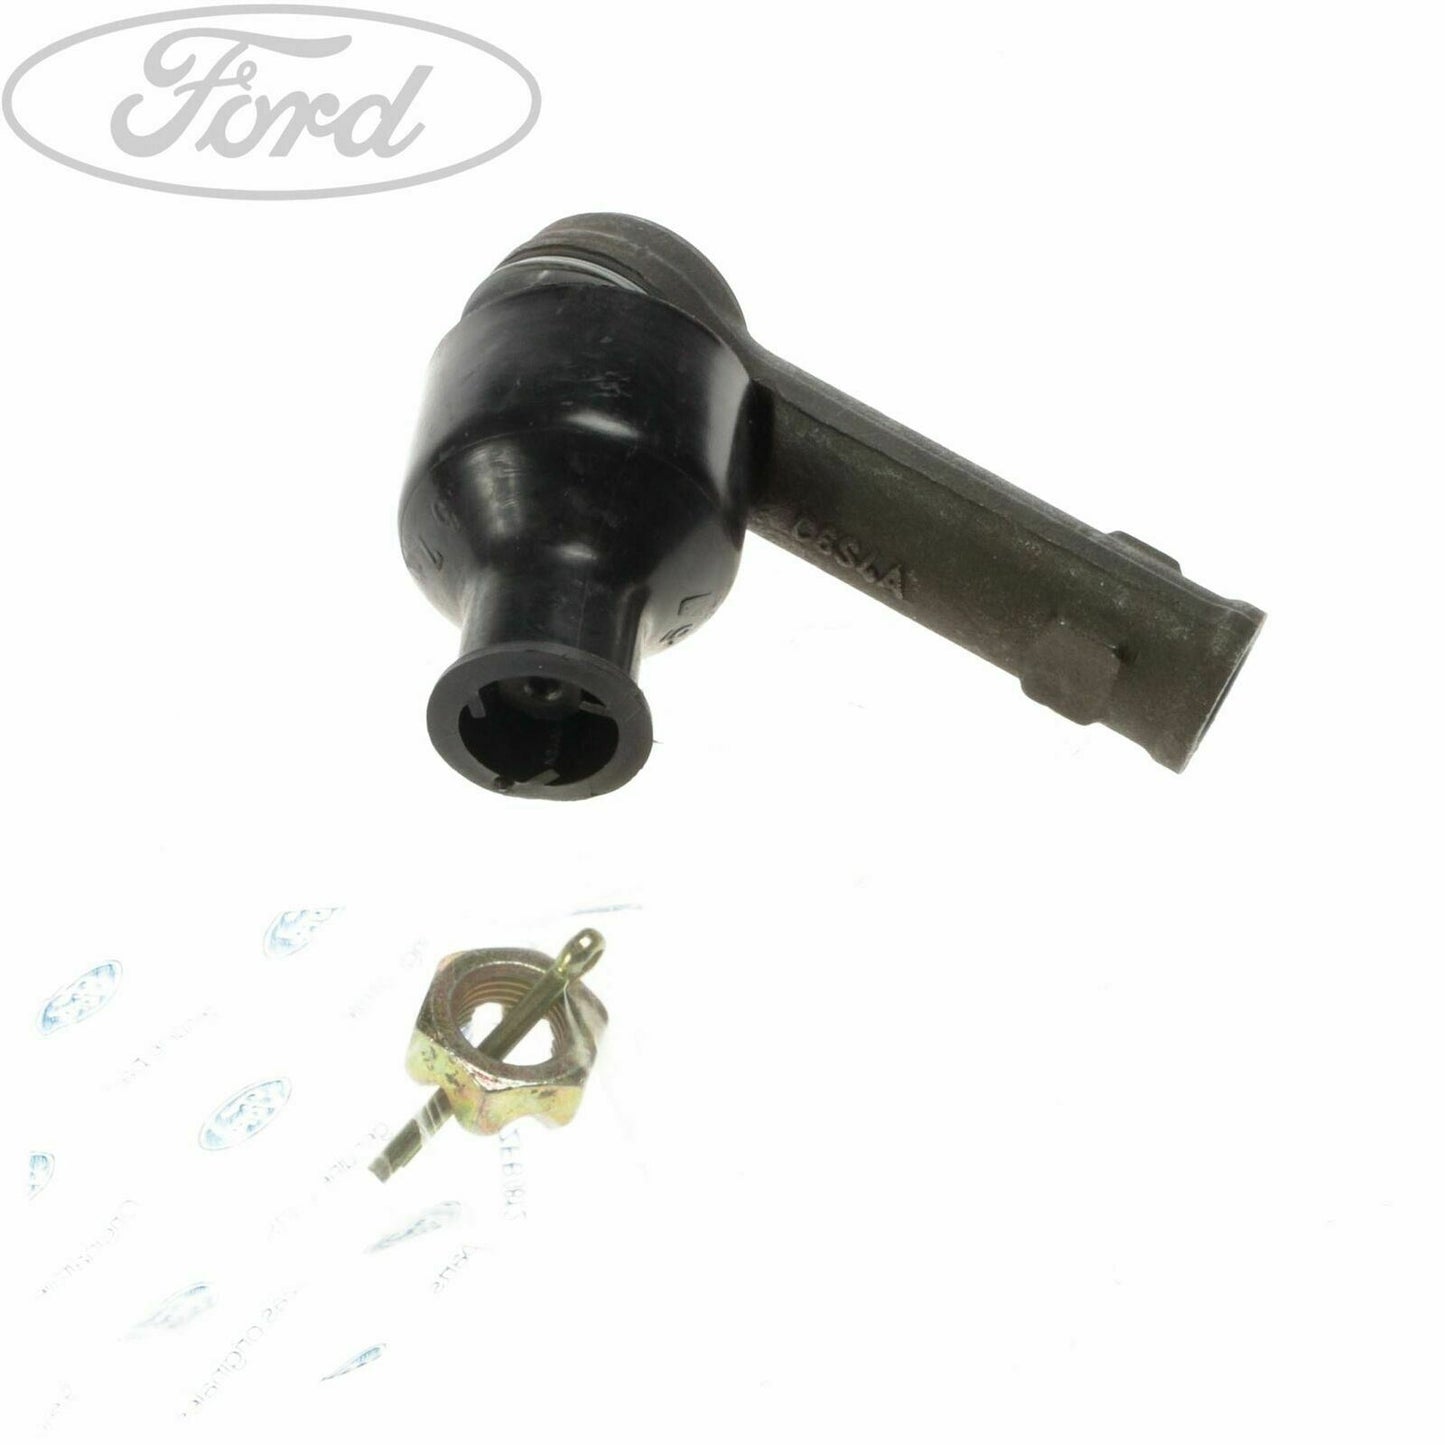 Genuine Ford Transit Steering Gear Tie Rod Repair Kit 1047145